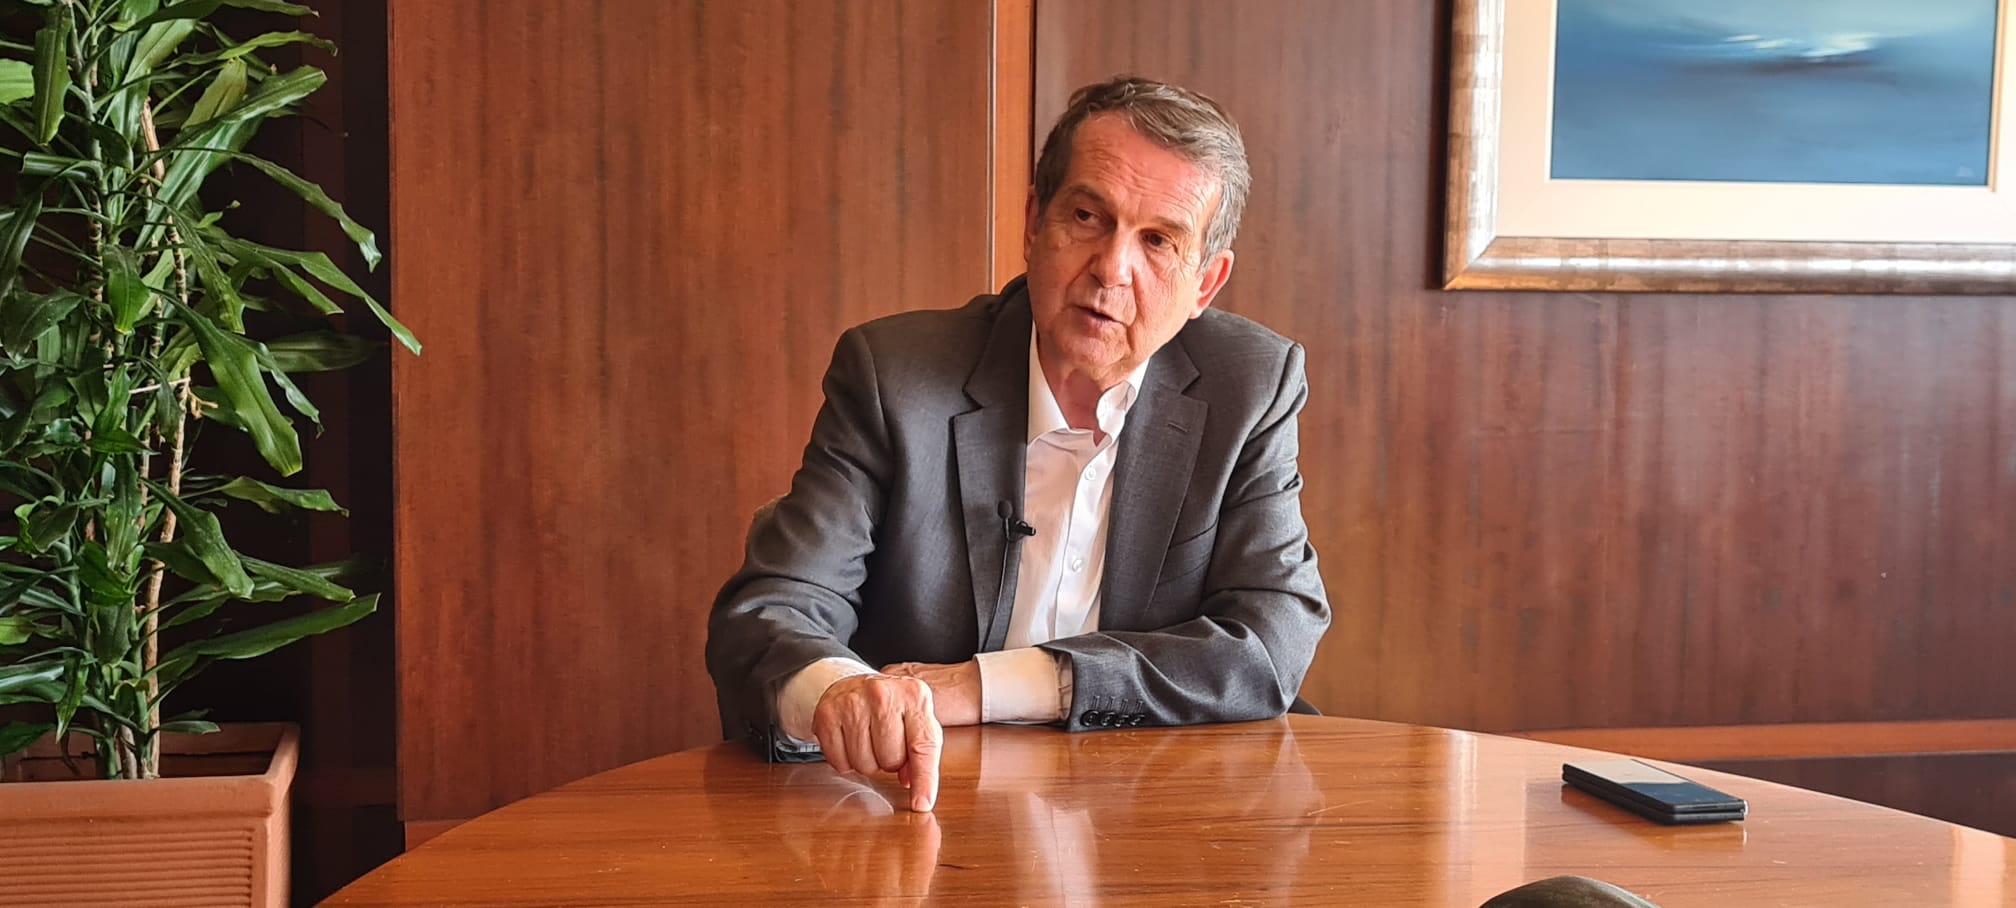 Vídeo: entrevista con Abel Caballero, alcalde de Vigo